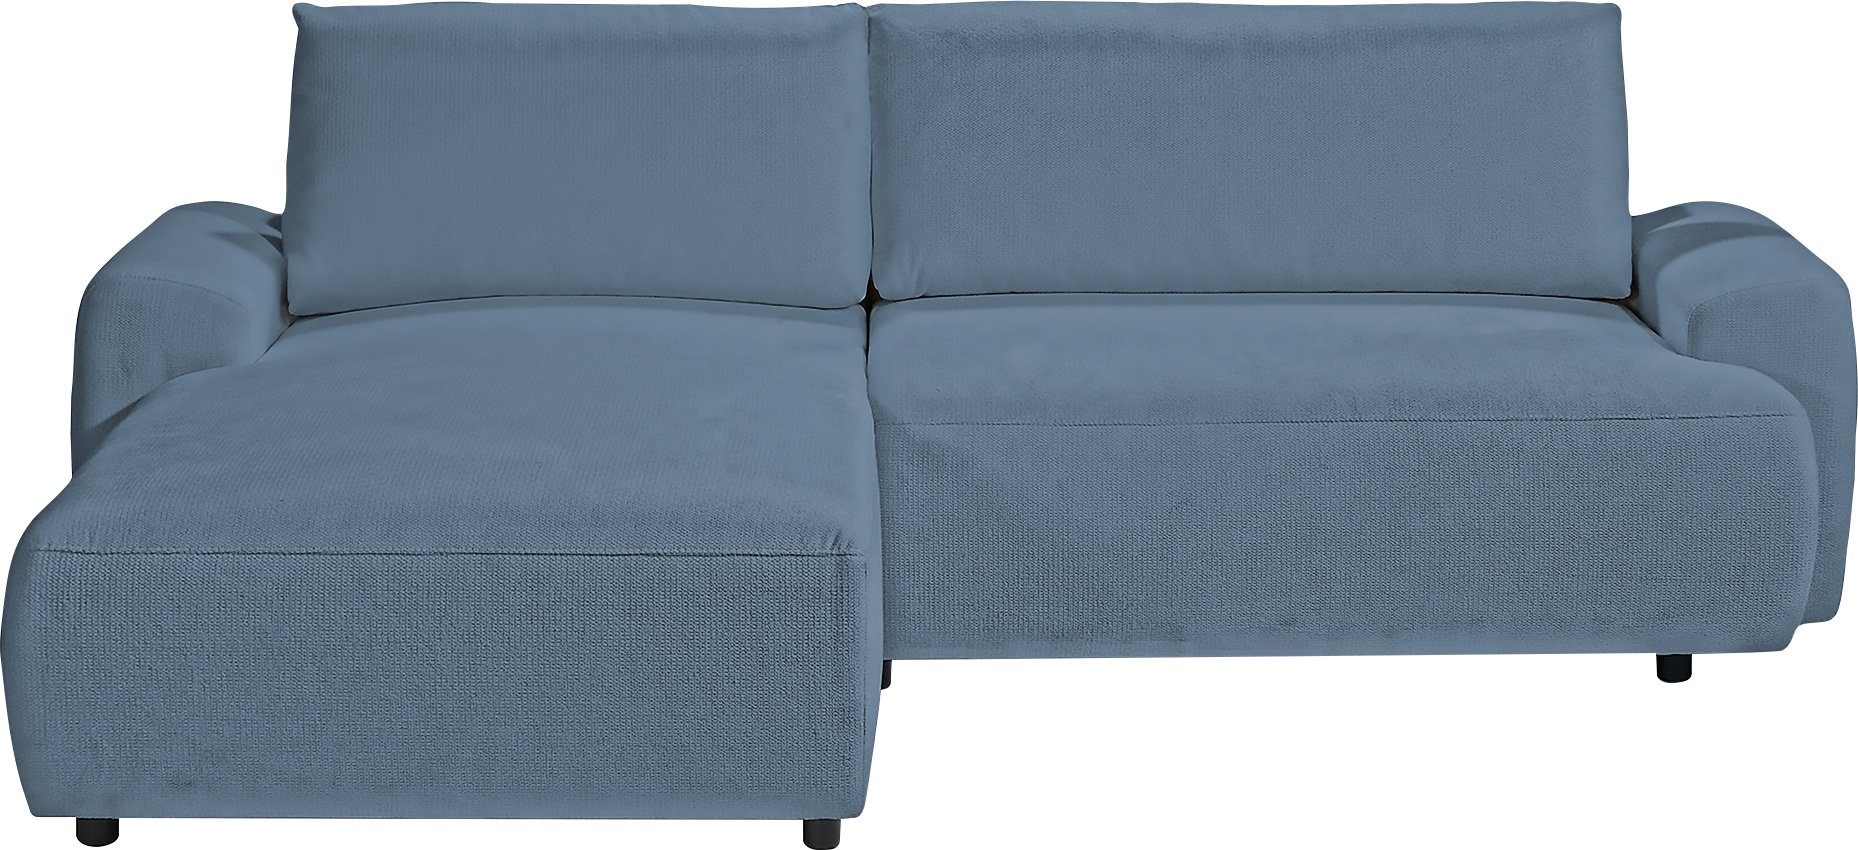 exxpo - sofa fashion Ecksofa, 2 Teile, in angenehmen Bezug, inklusive Bettfunktion und Bettkasten